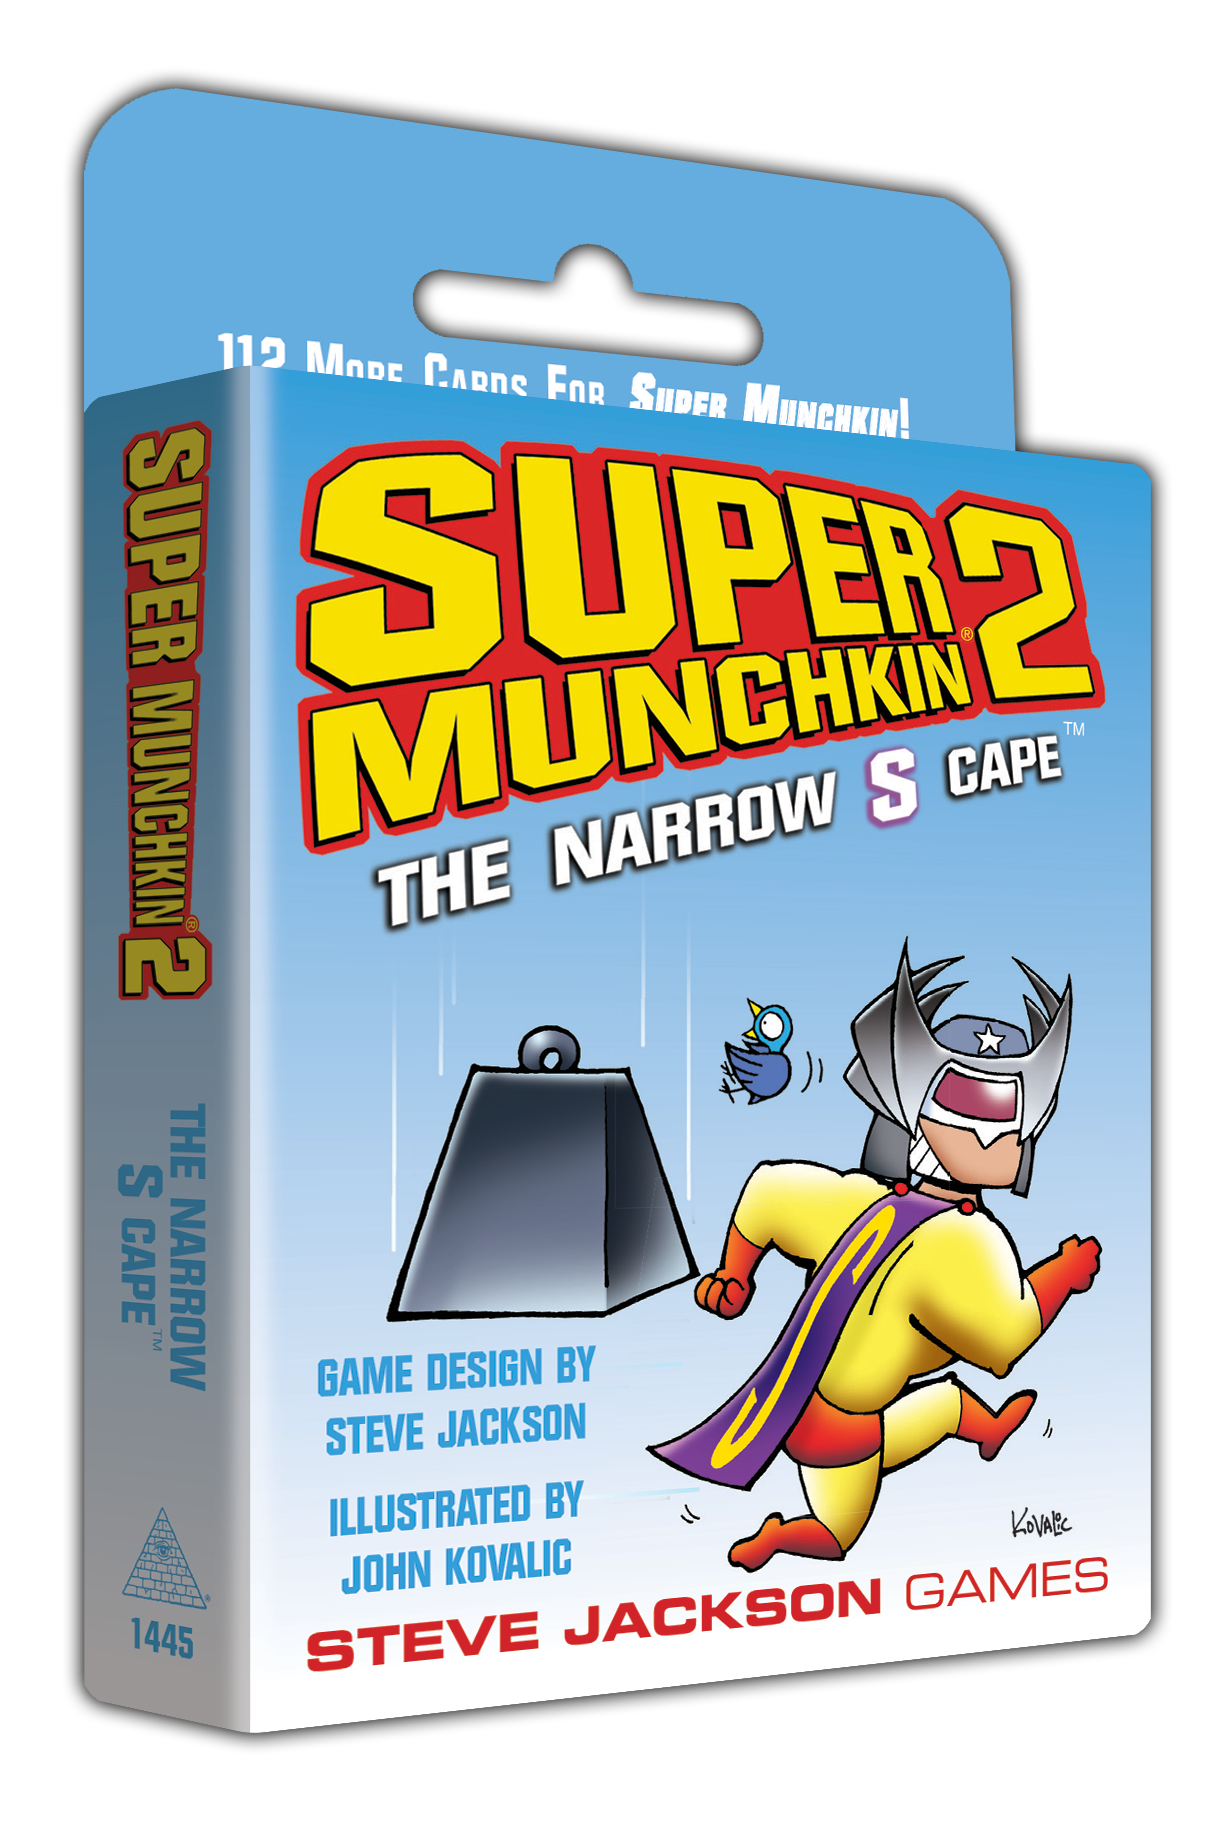 Super Munchkin 2 - The Narrow S Cape